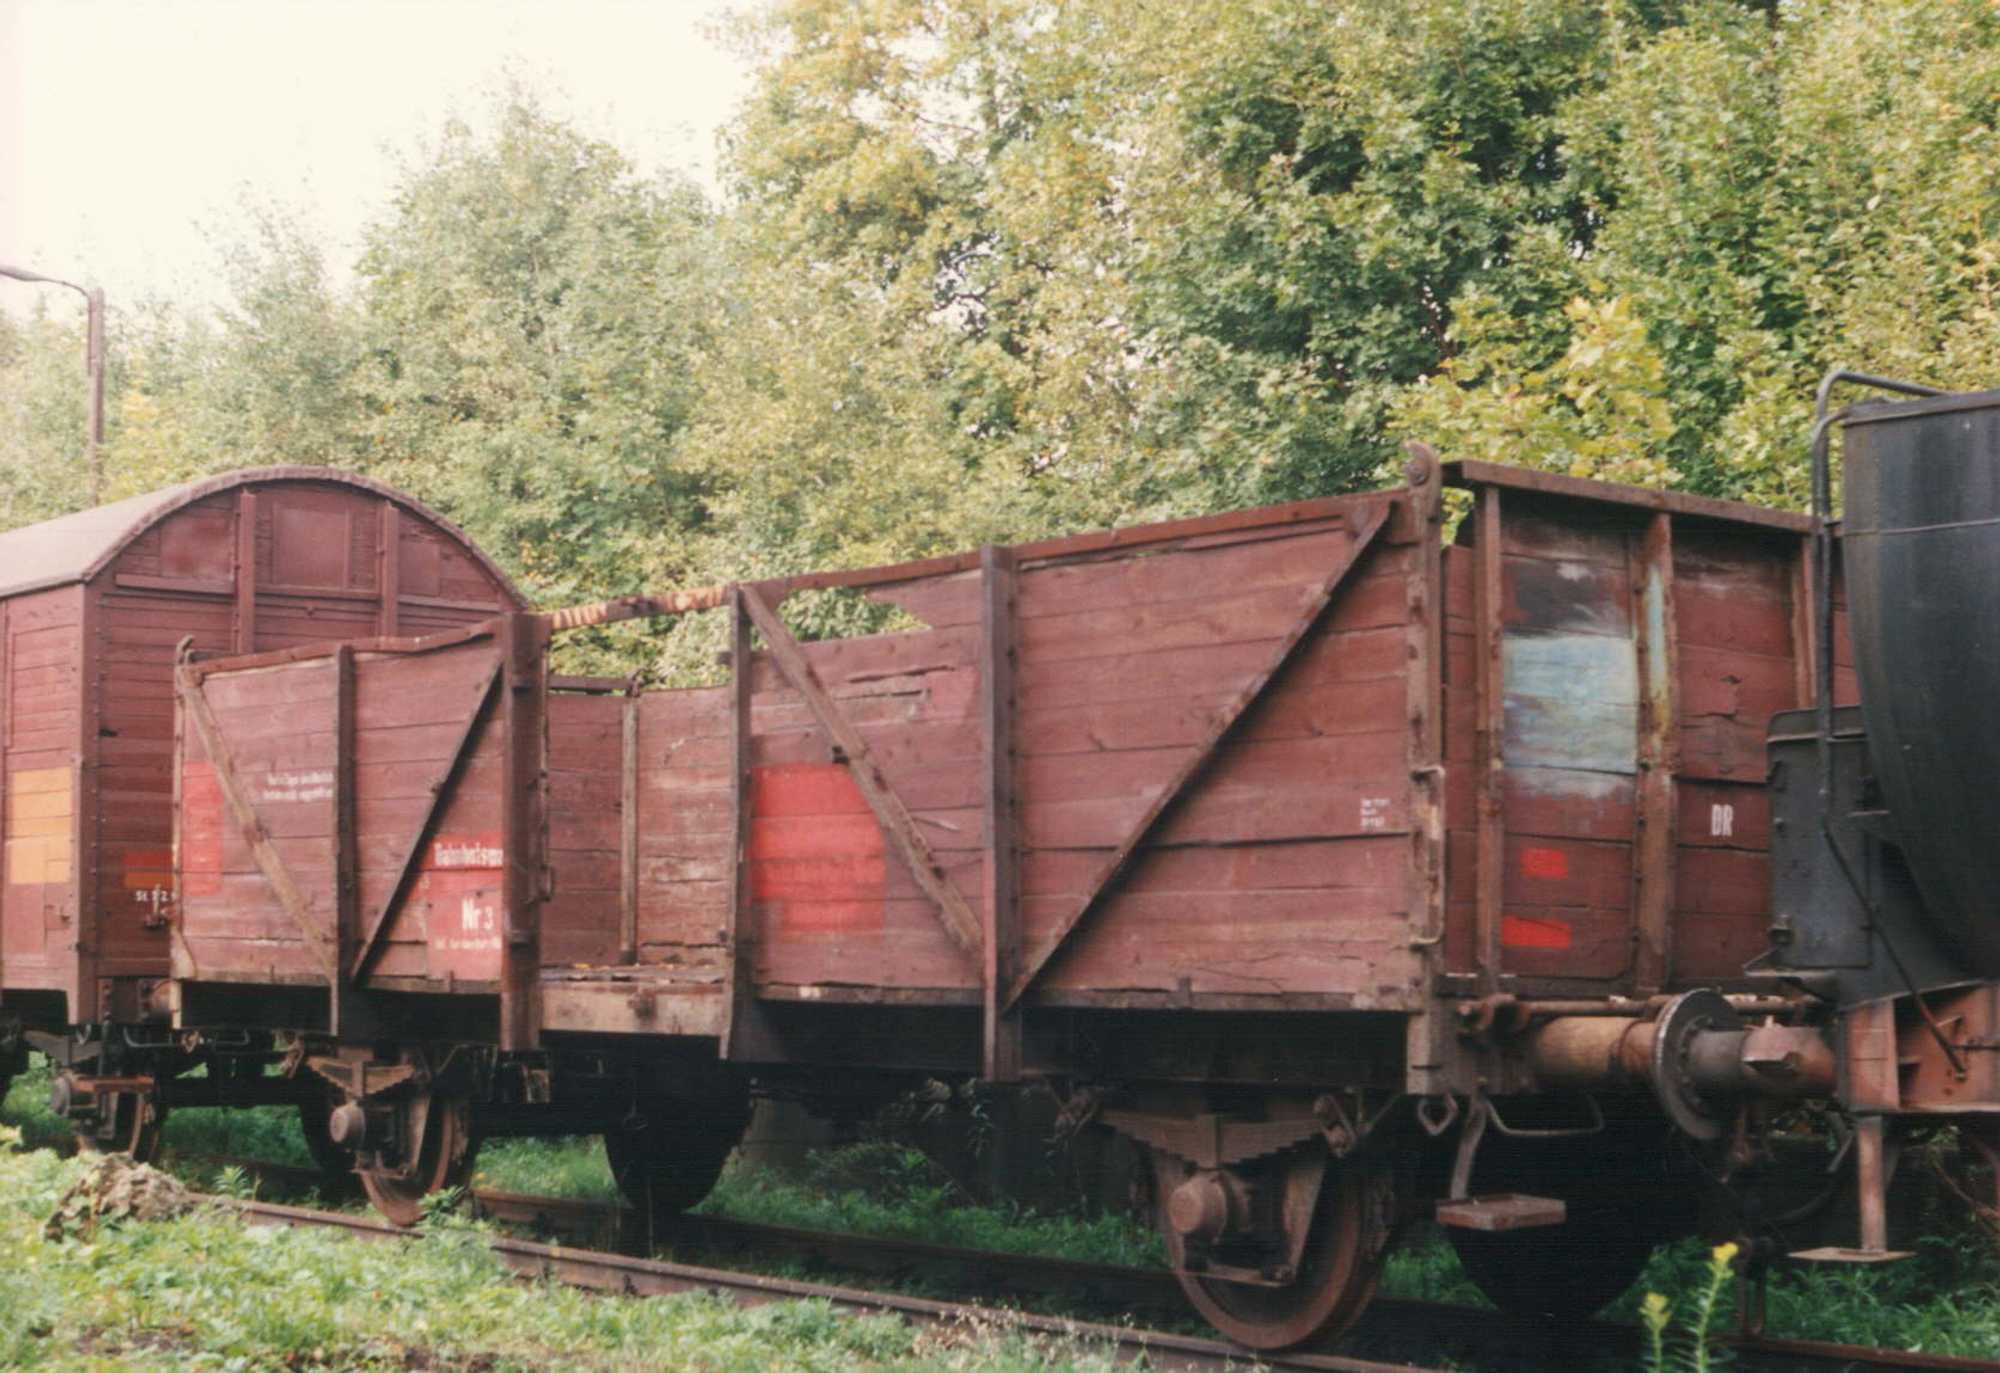 Noch in Olbernhau war der regelspurige offene Güterwagen der Gattung Ommu in keinem besonderen Zustand.